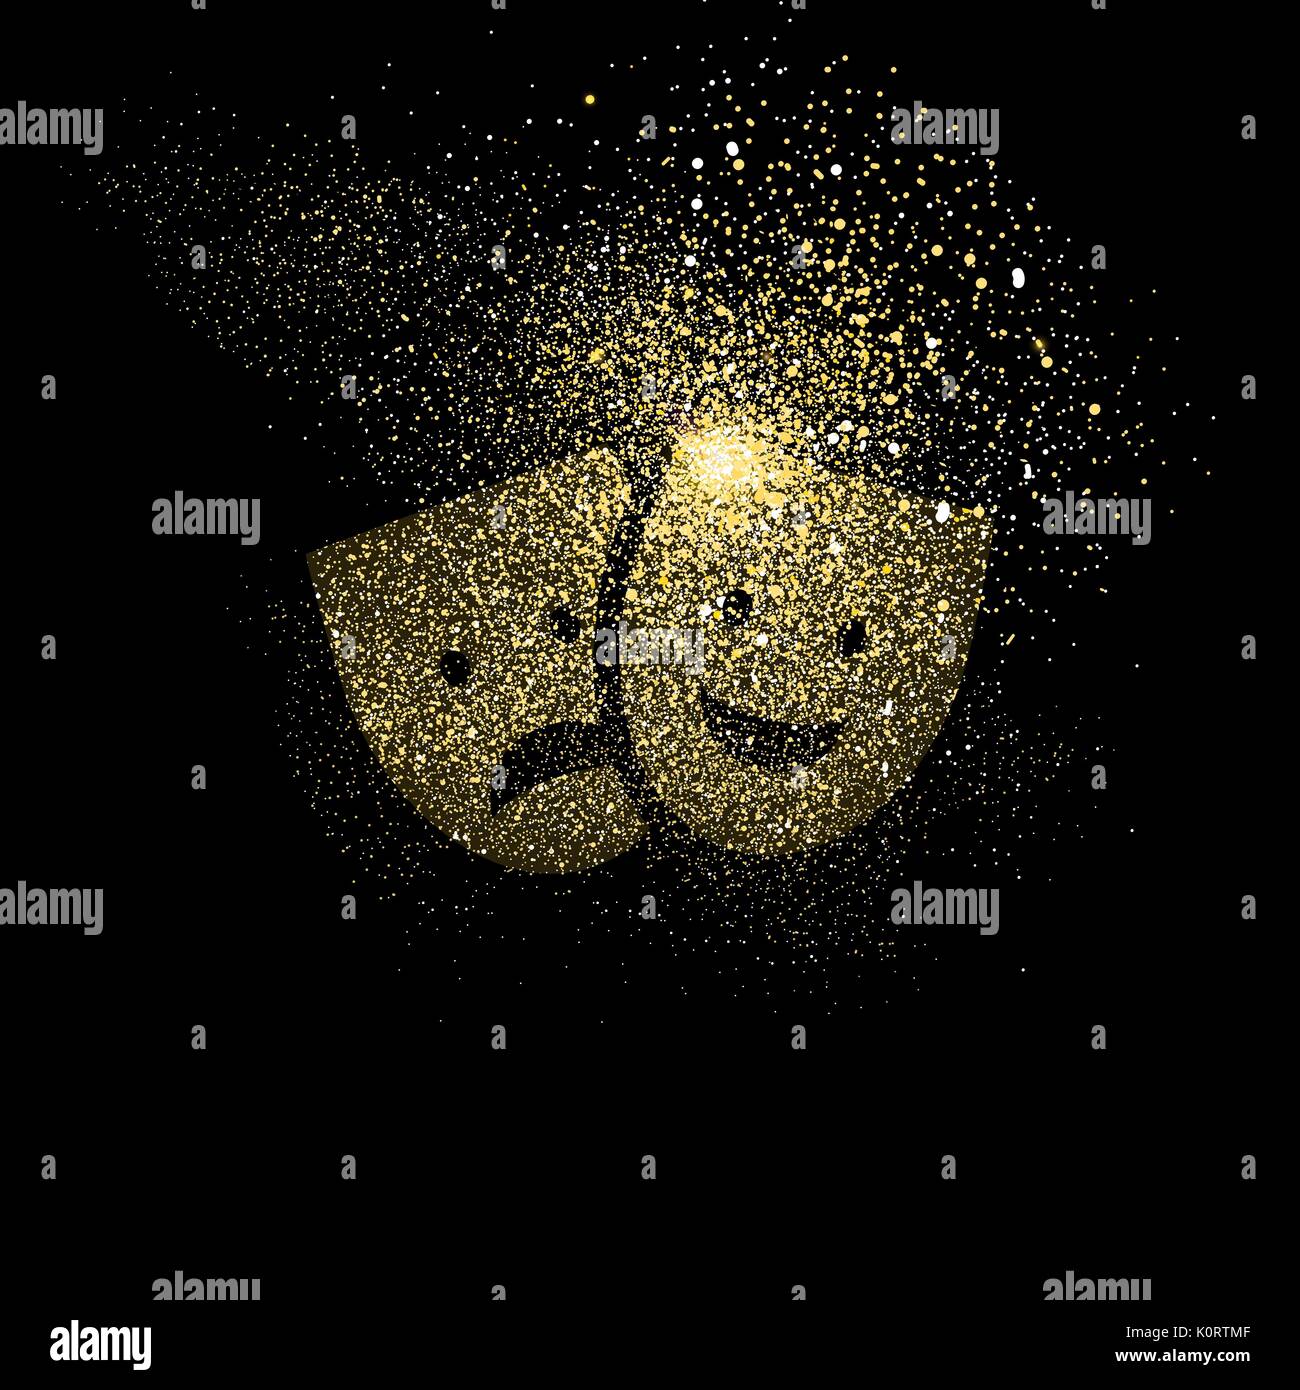 Theater Maske symbol Konzeption Illustration, gold Unterhaltung Symbol aus realistischen Golden glitter Staub auf schwarzen Hintergrund. EPS 10 Vektor. Stock Vektor